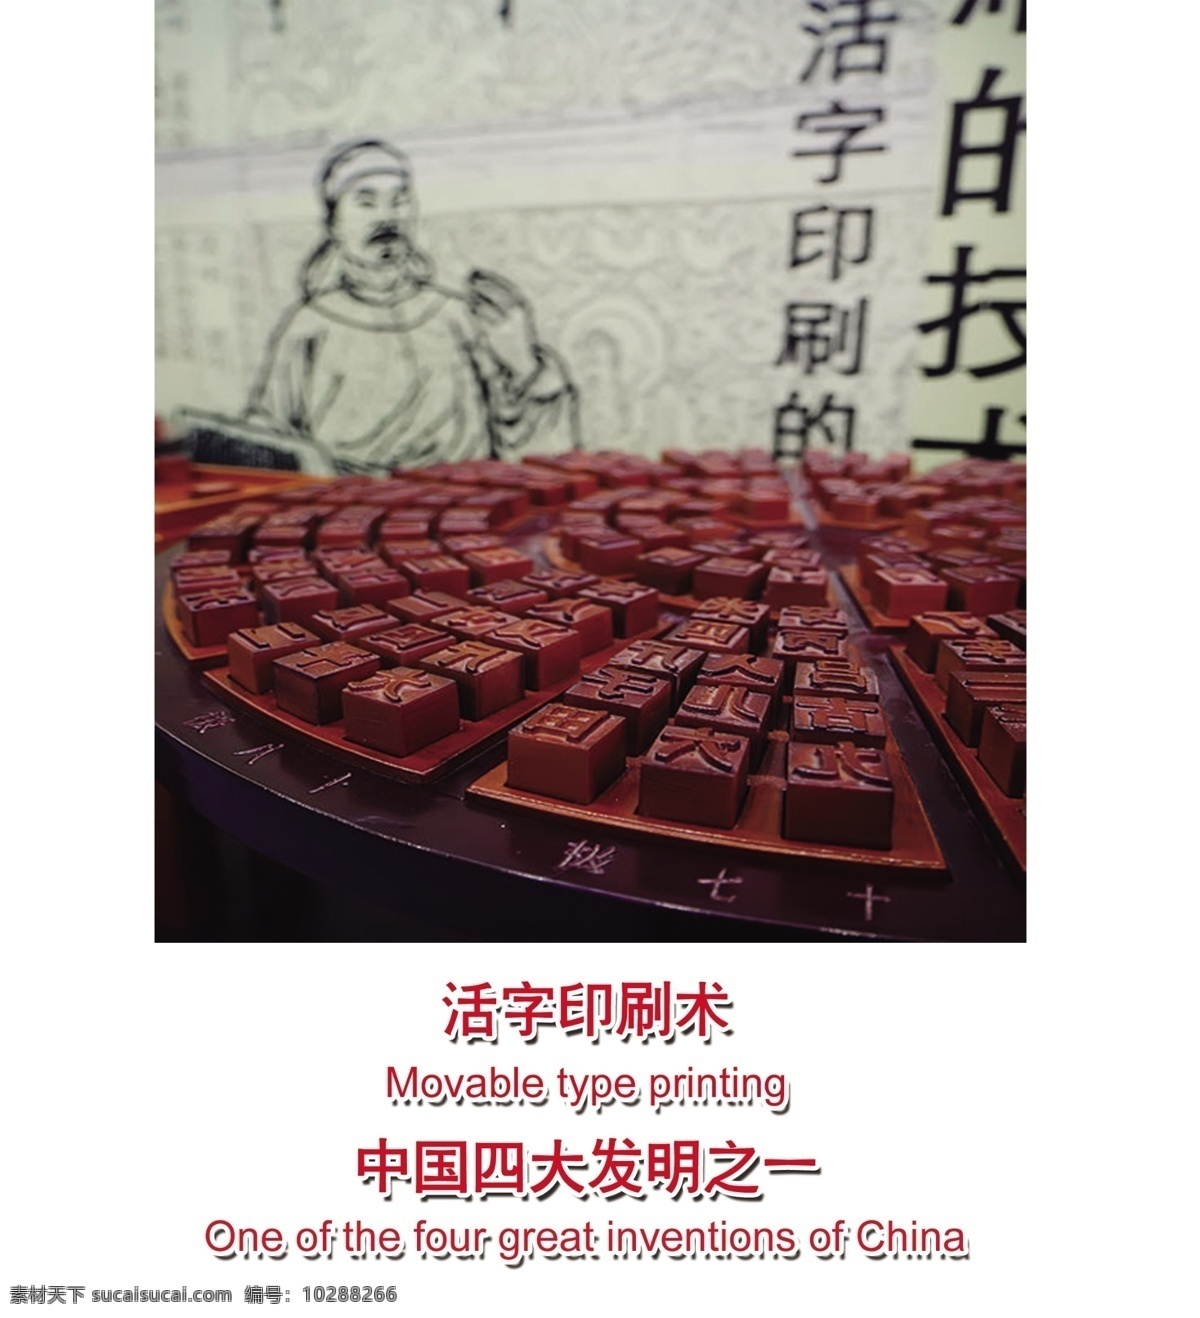 活字印刷术 古代 中国 四大发明 之一 英文翻译好 psd源文件